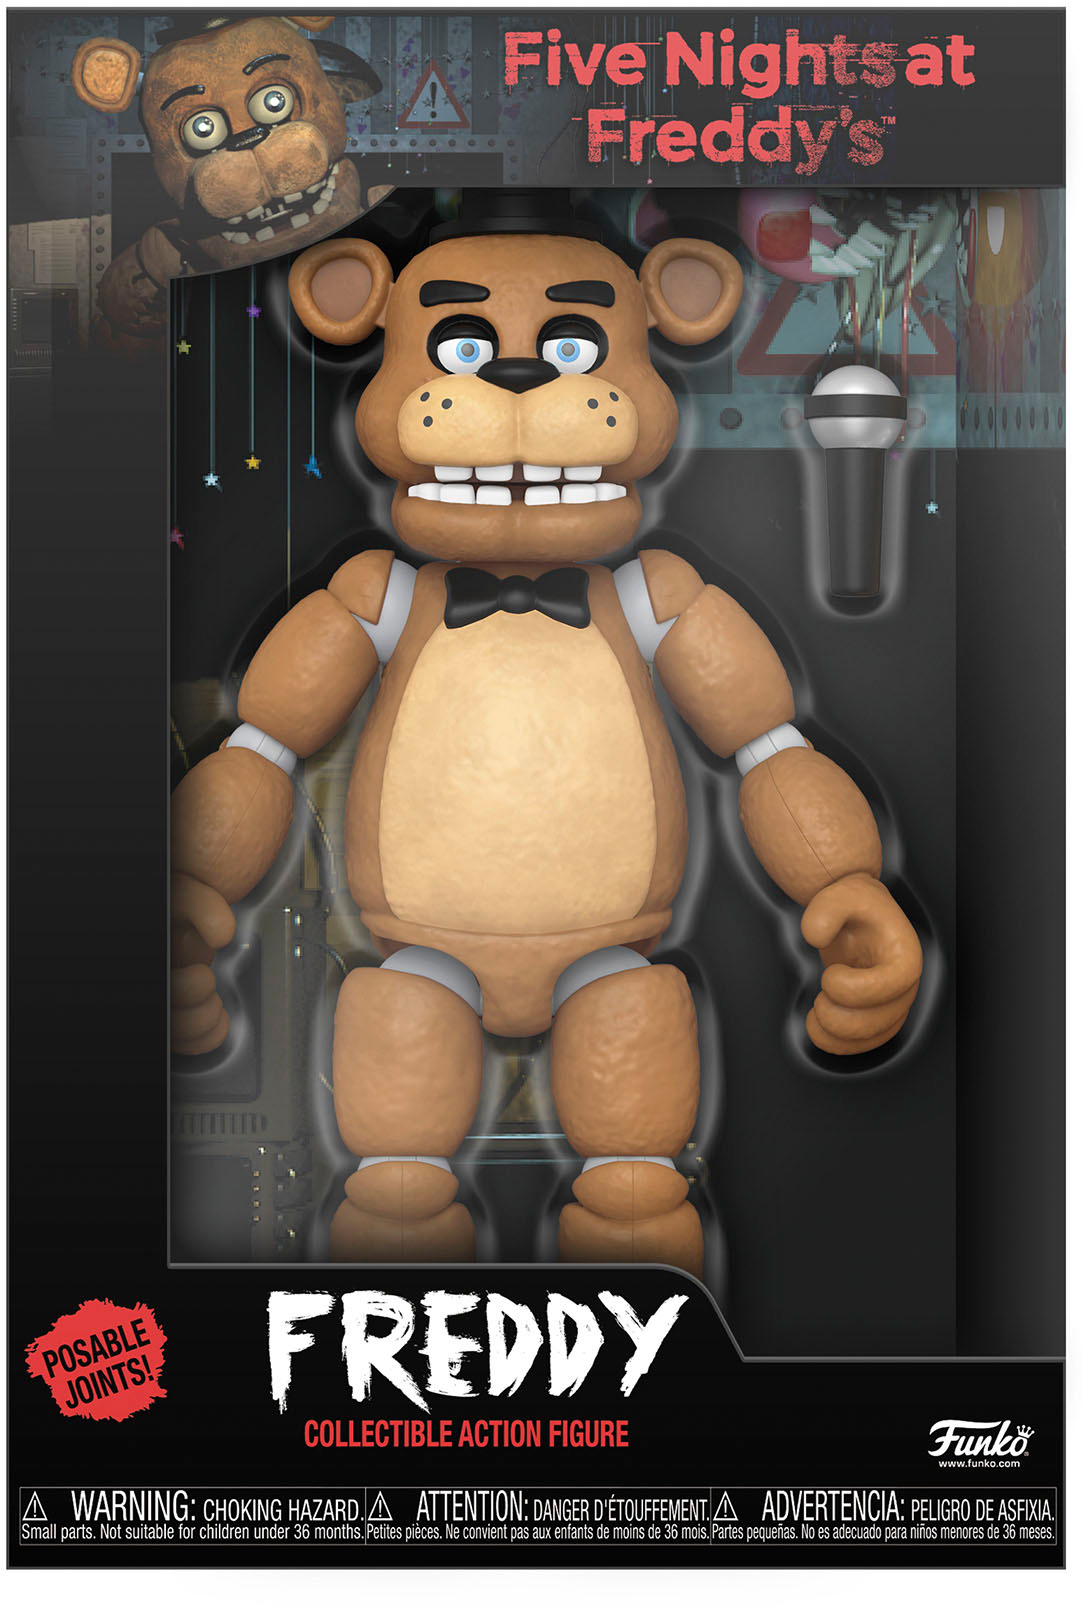 180 Best Freddy ideas  freddy, fnaf, five nights at freddy's